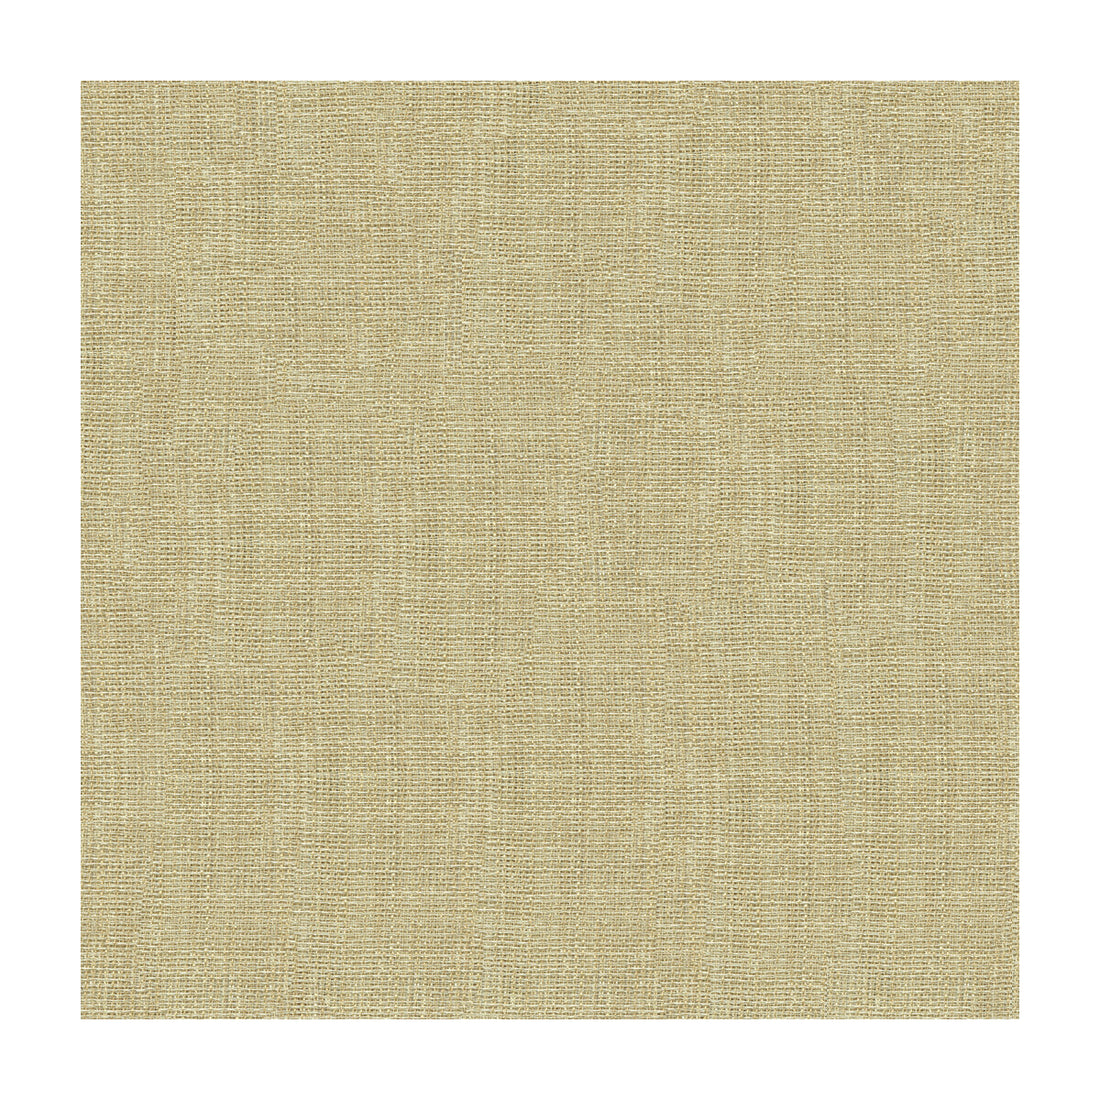 Kravet Basics fabric in 4118-1116 color - pattern 4118.1116.0 - by Kravet Basics